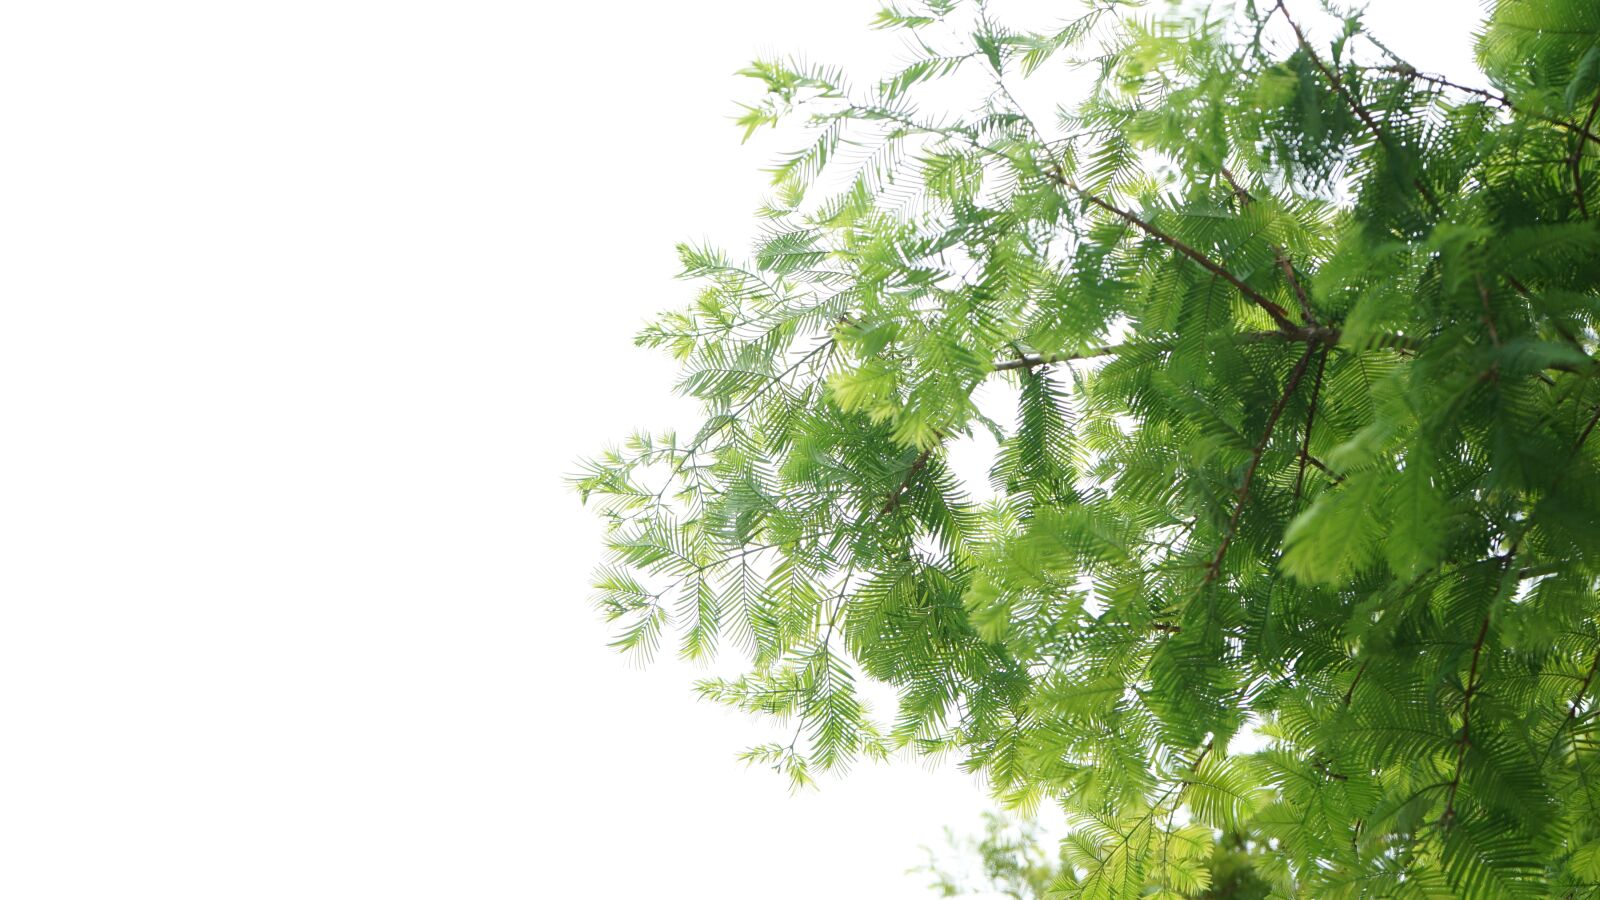 Sony FE 28-70mm F3.5-5.6 OSS sample photo. Sky, tree, nature photography